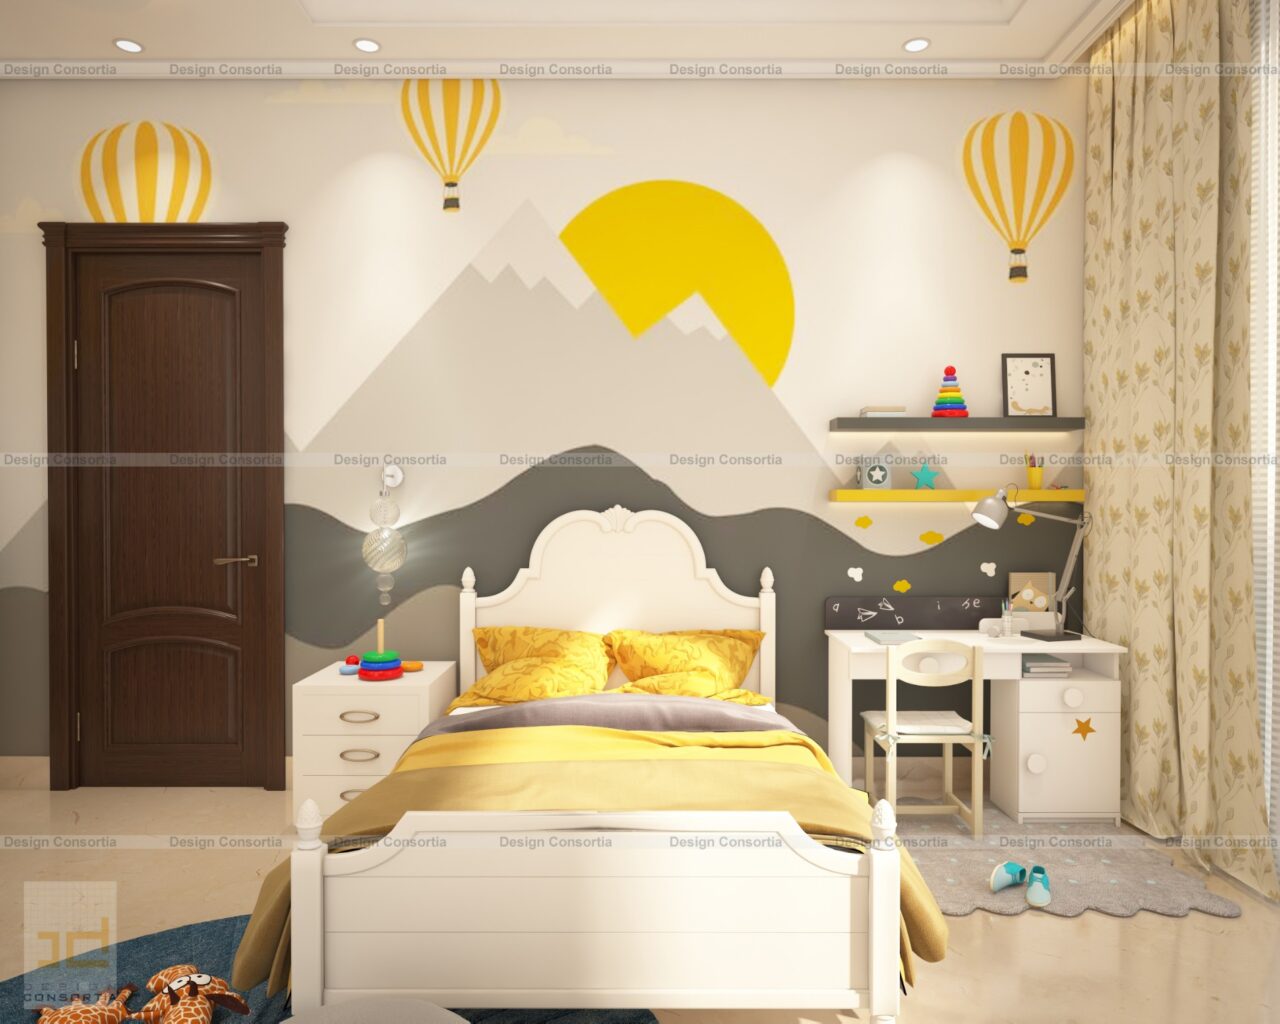 1st-floor-kids-room-1-logo-1280x1024.jpg